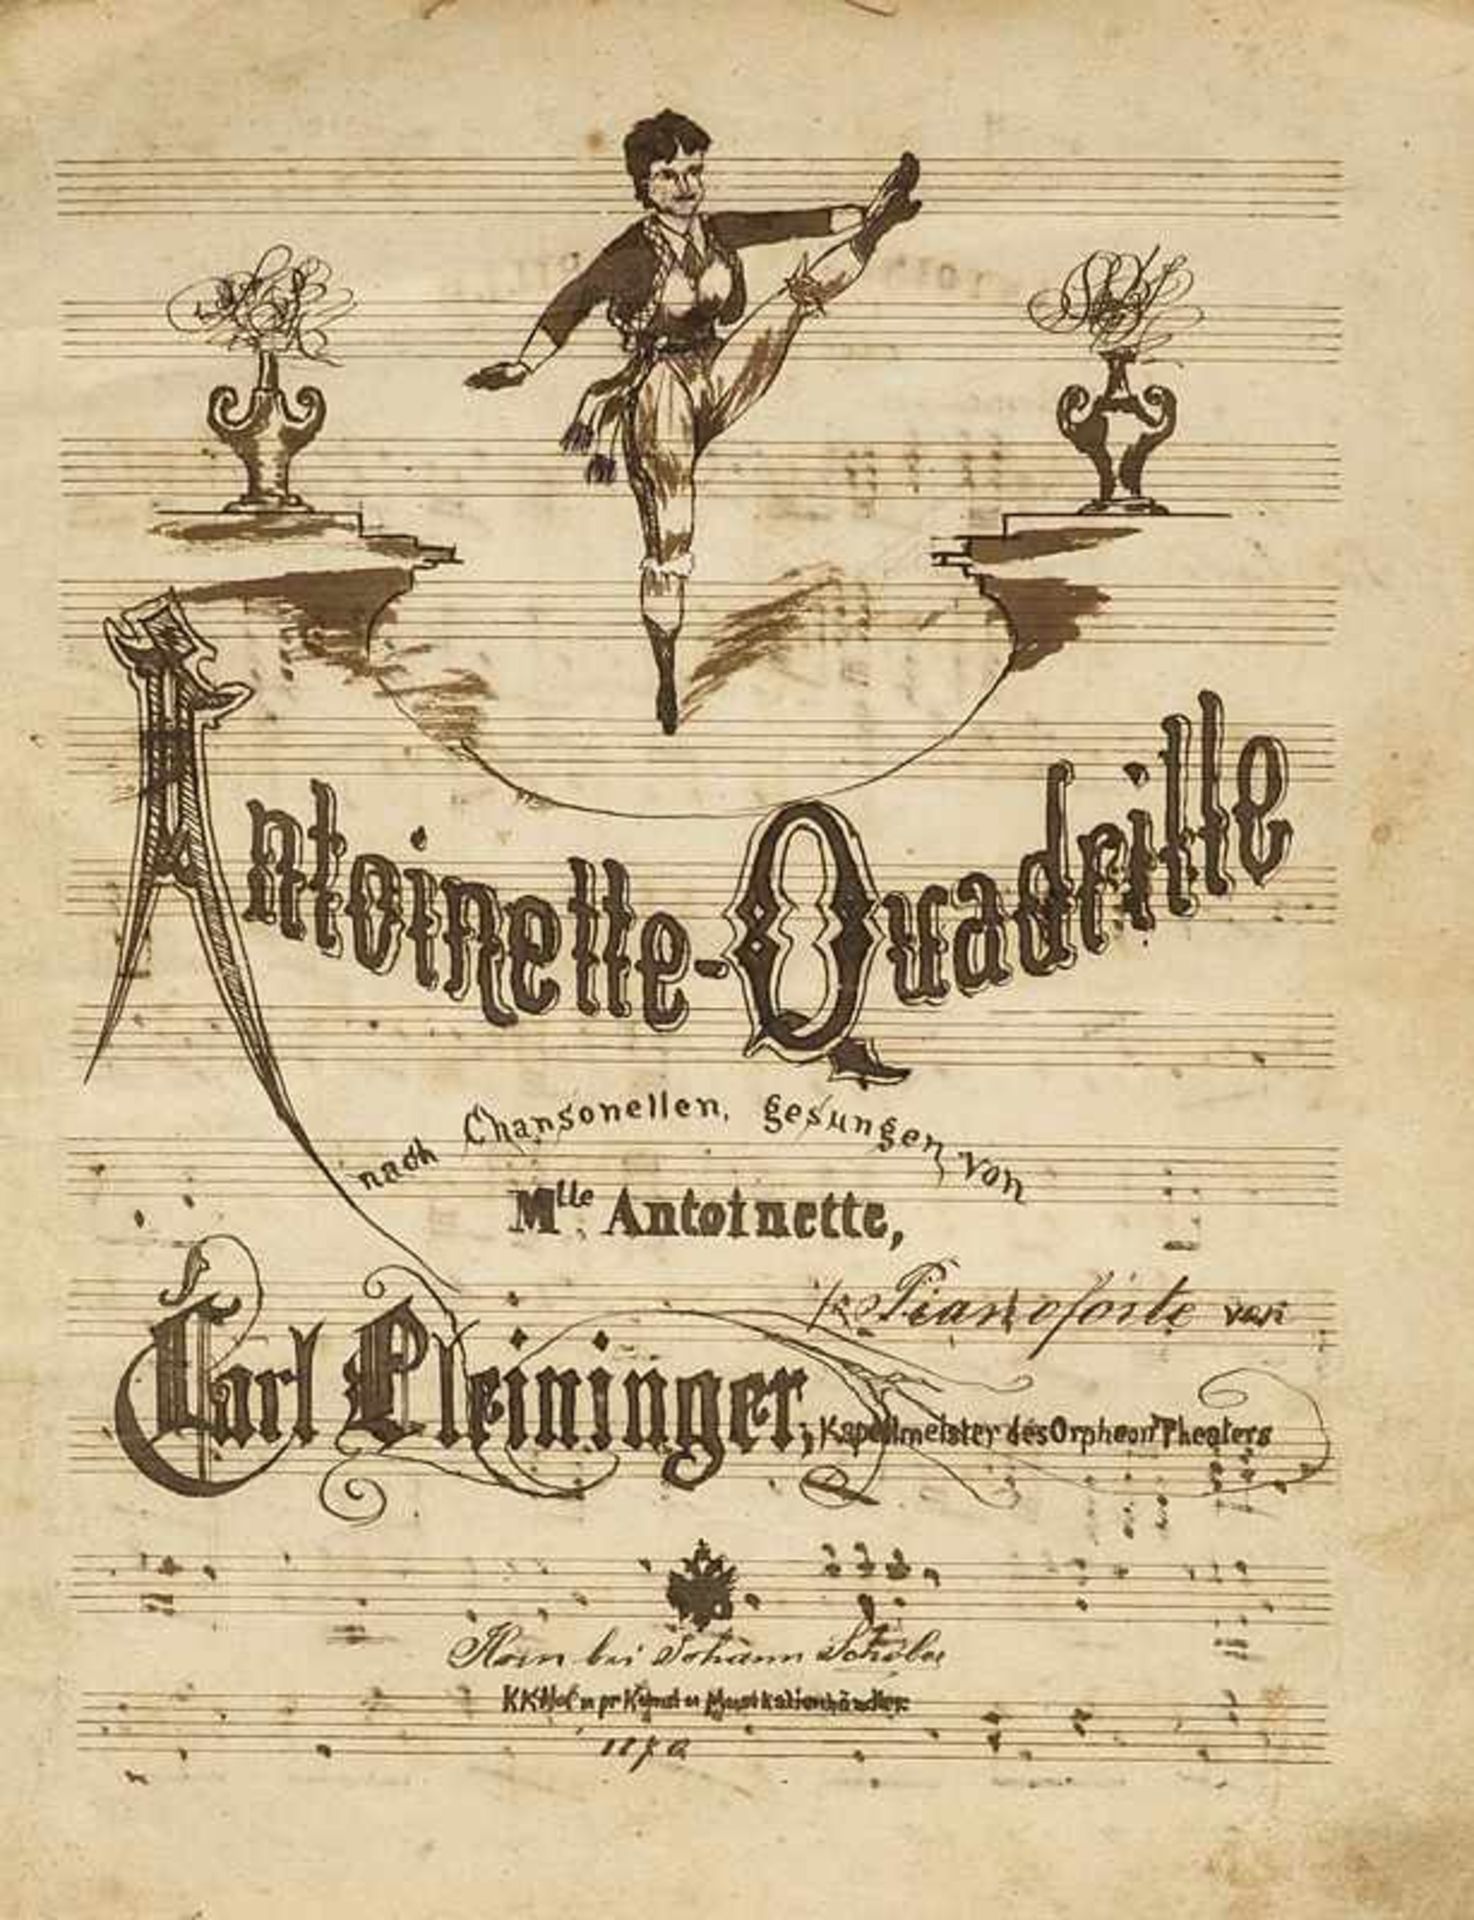 Musik Antoinette-Quadrille nach Chansonellen, gesungen von Mlle. Antoinette. Für Pianoforte von Carl